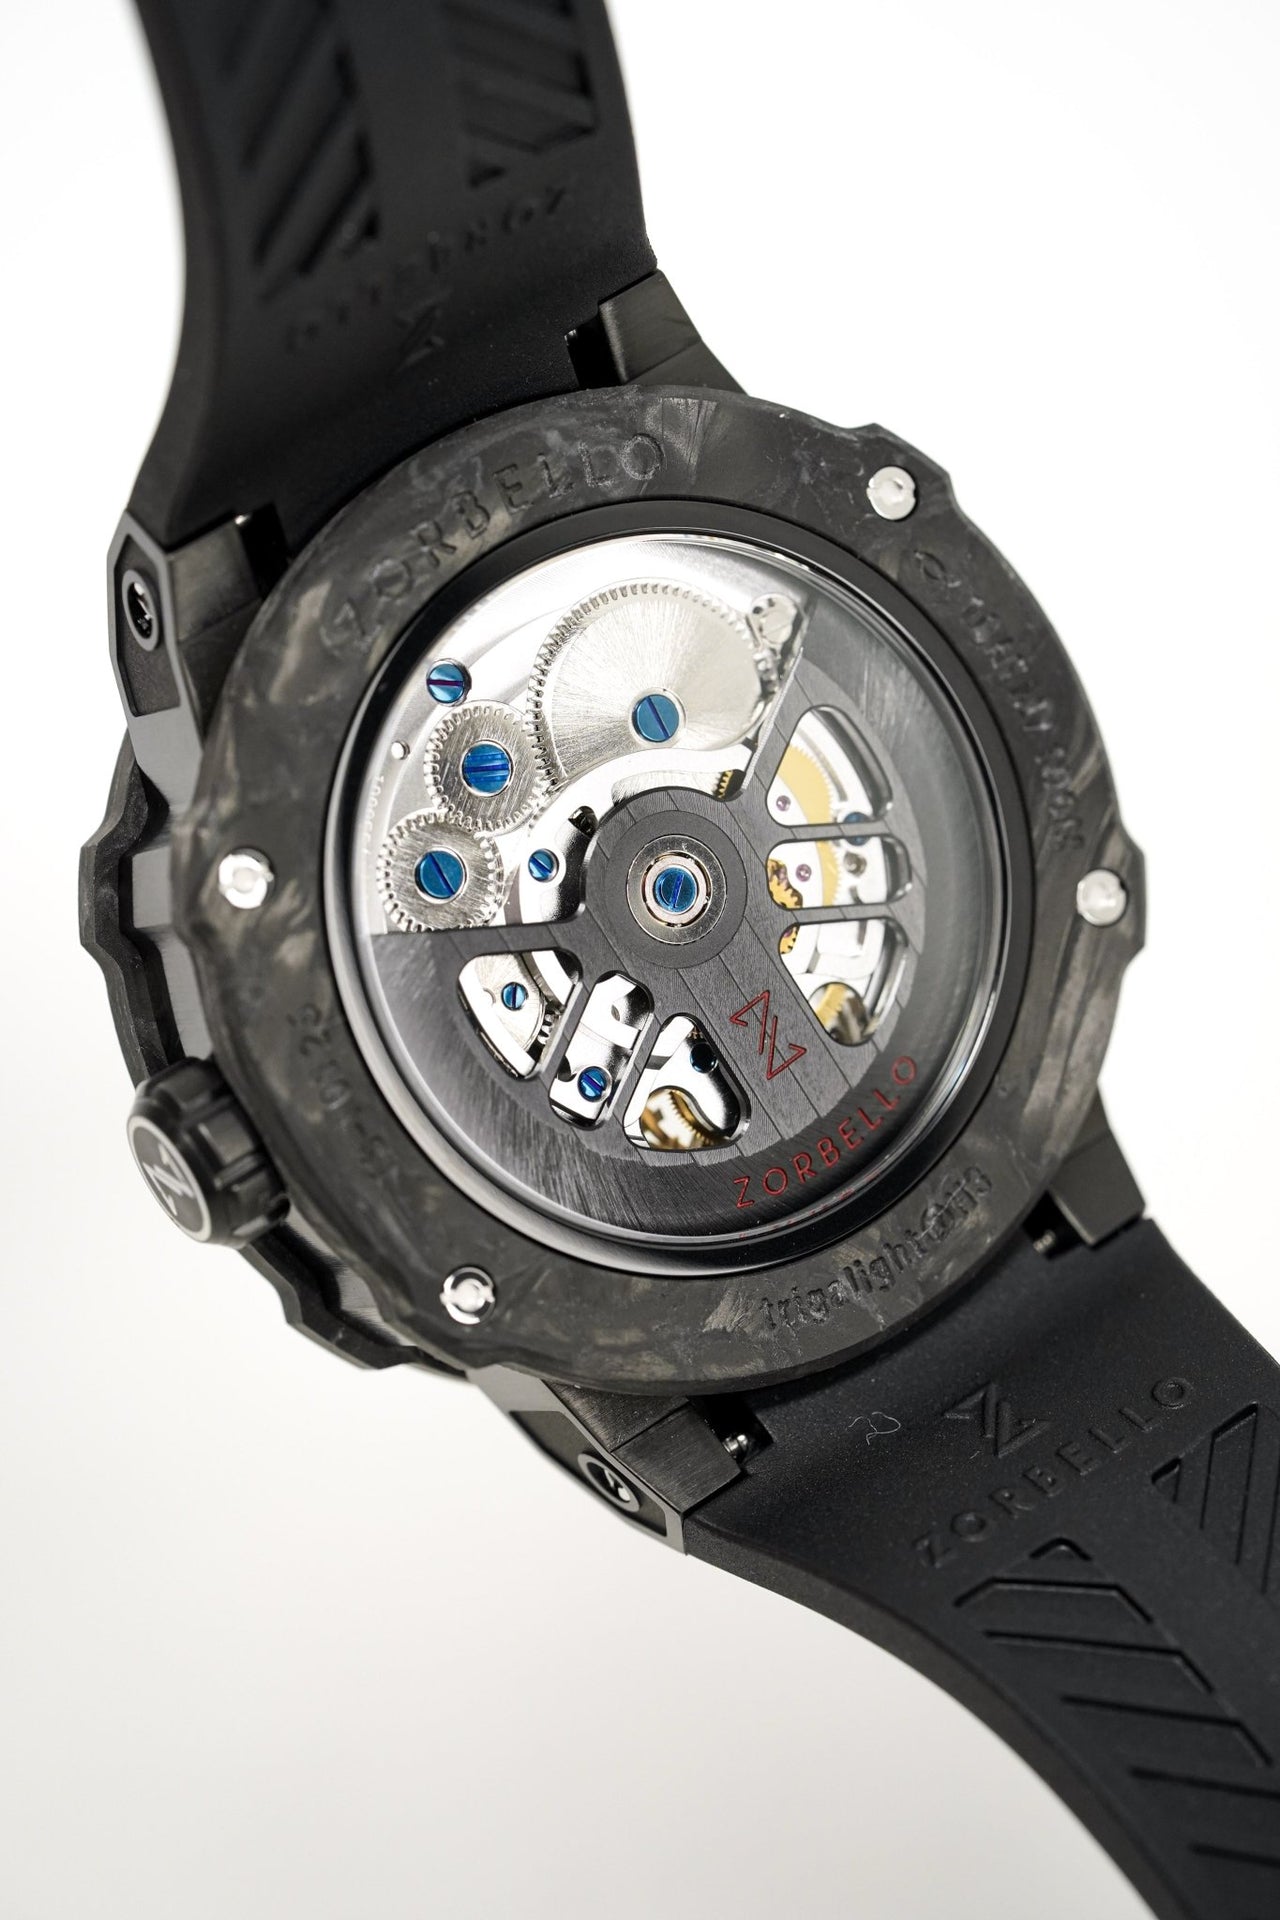 Zorbello Watch T3 Tourbillon Black Super-Luminova® Tritium ZBAD001 *Free Watch Winder* - Watches & Crystals